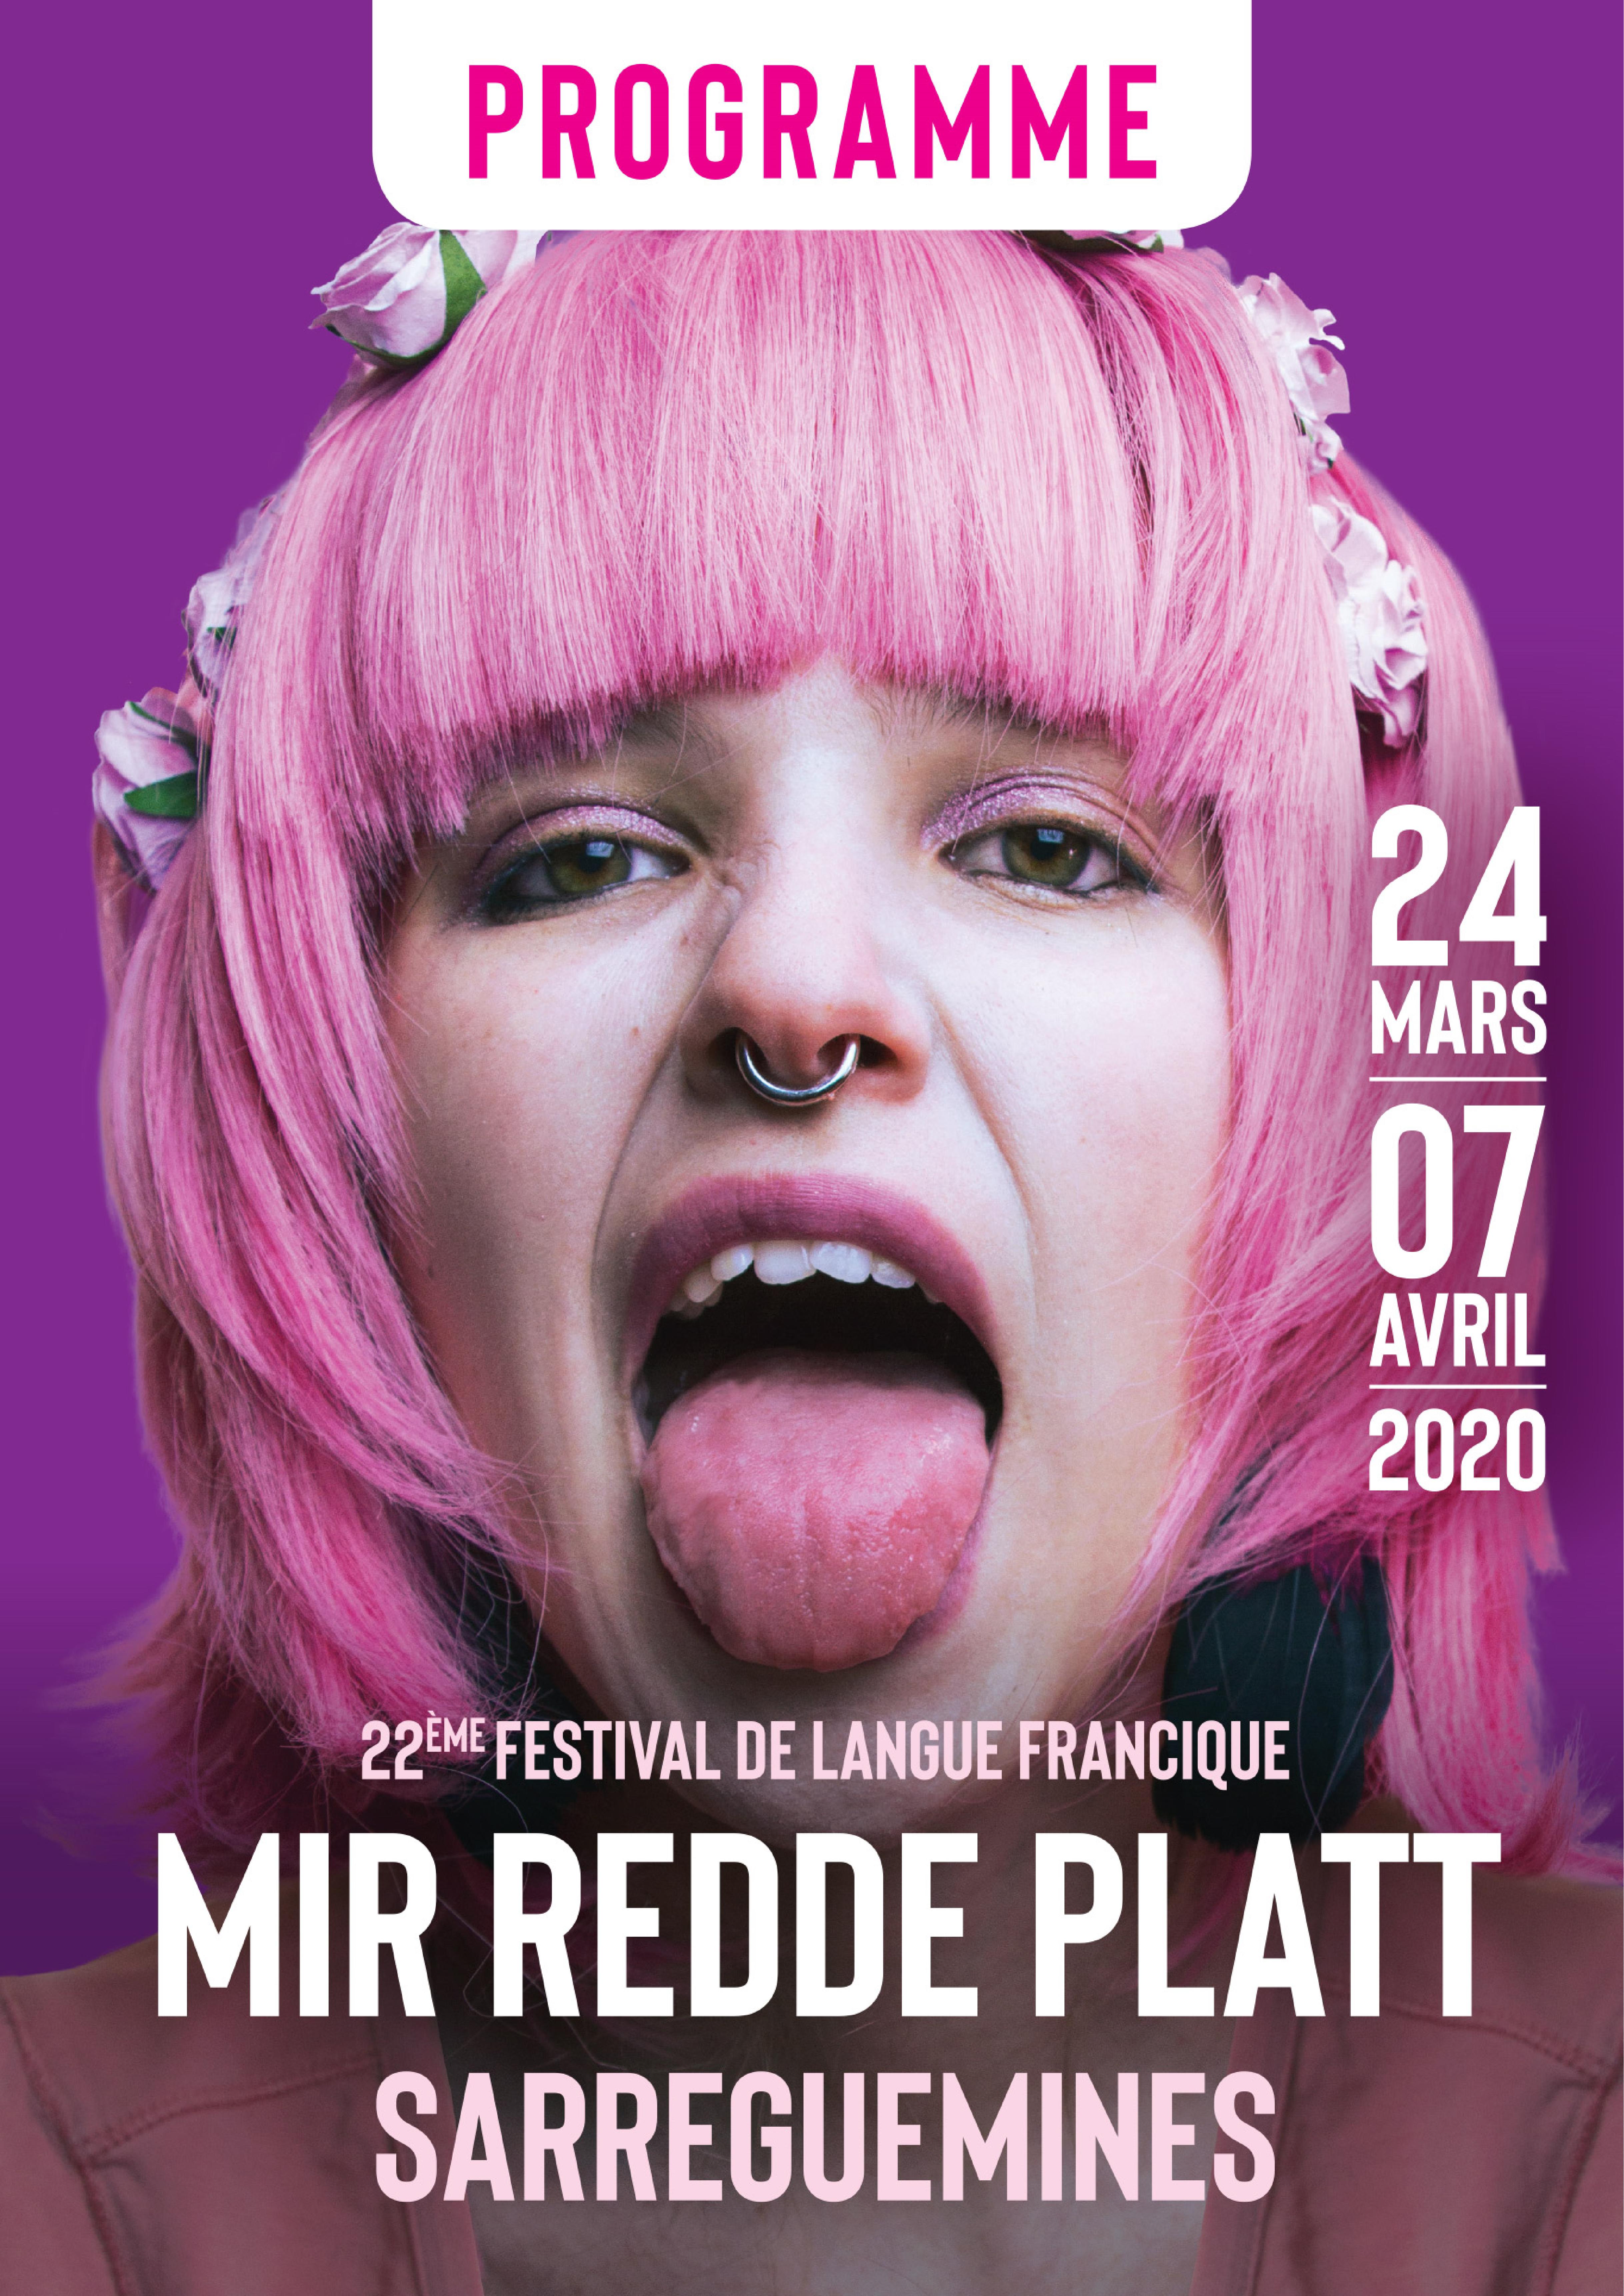 Mir Redde Platt 2020 22me festival de langue francique Sarreguemines